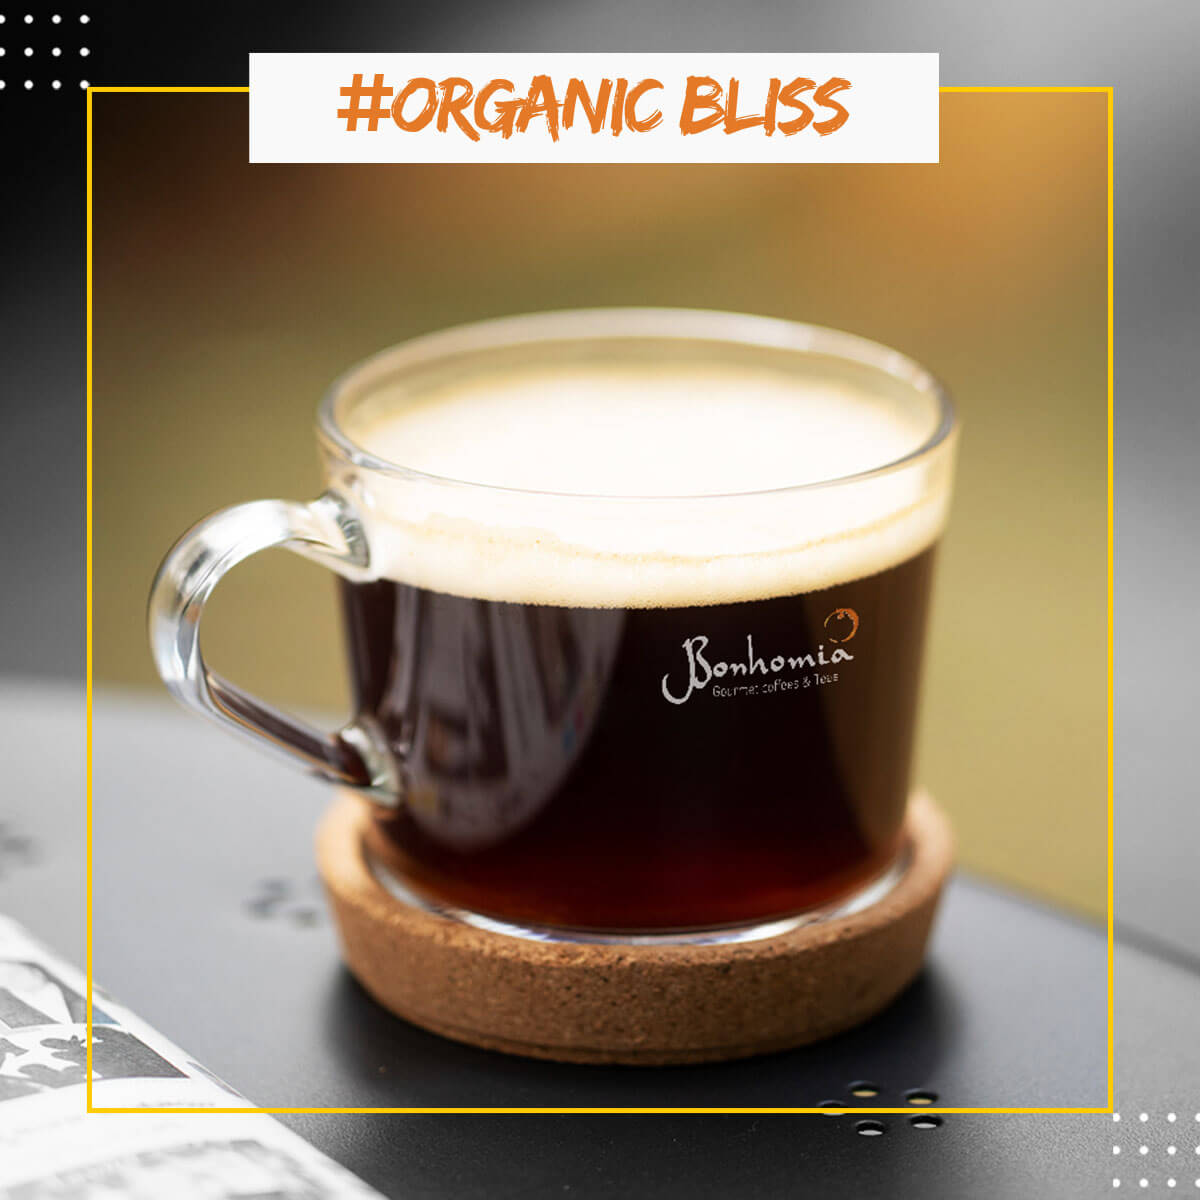 Organic Bliss Espresso Pods - Intensity 4/10 | Nespresso Compatible | Medium Roast | Premium AA+ Grade Beans | Aluminum Capsules